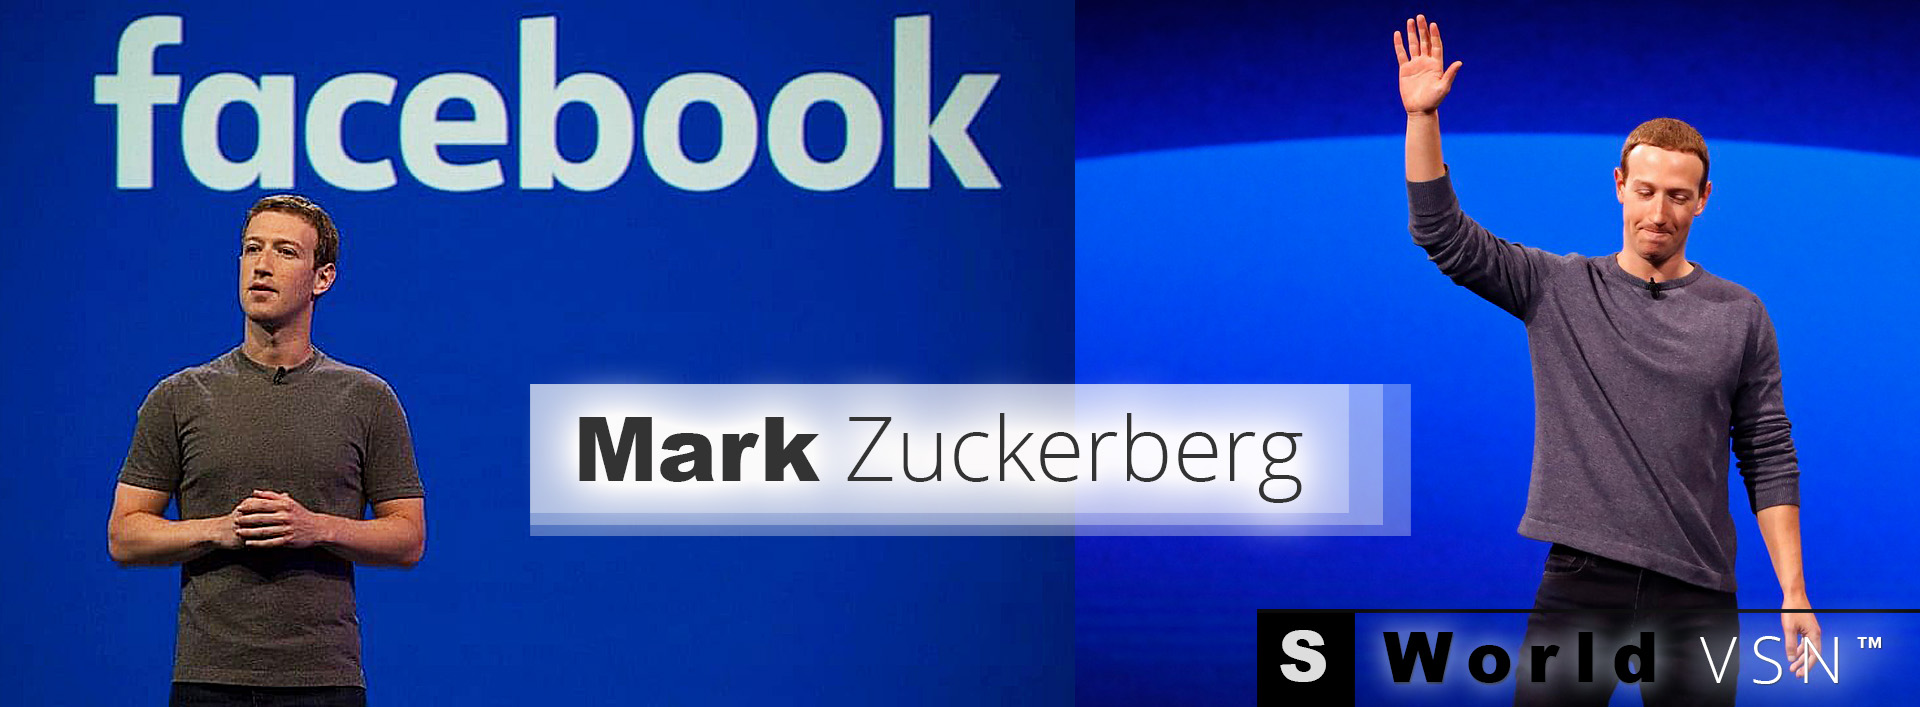 Mark-Zuckerberg-9-VSN